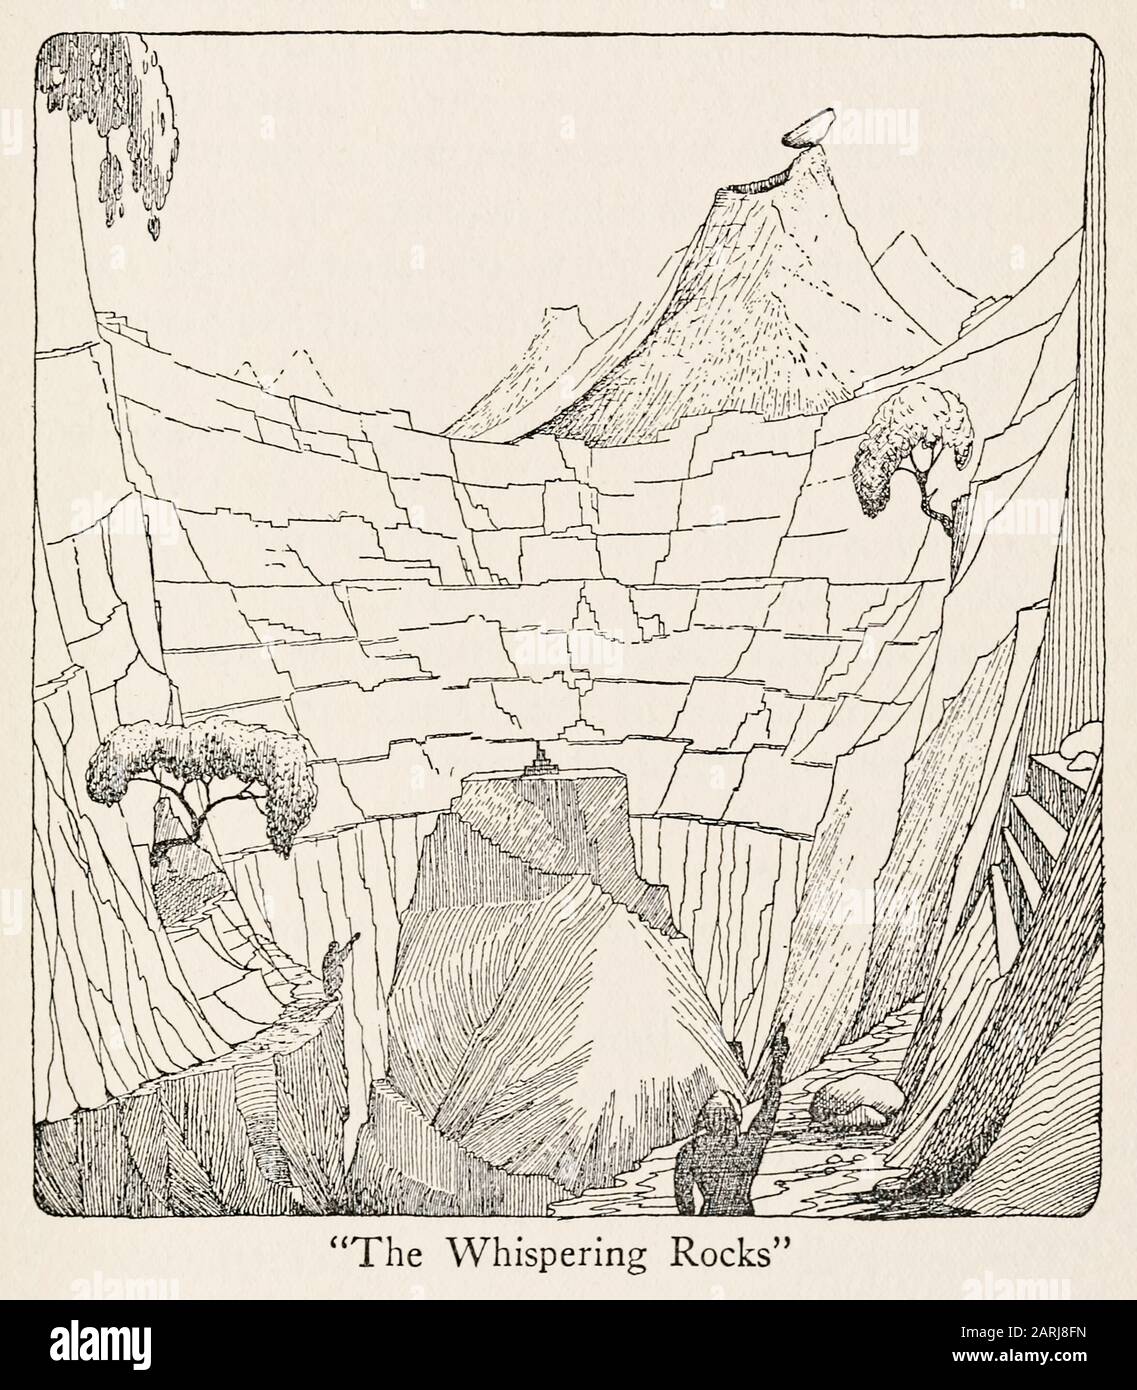 « The Whispering Rocks », illustration des voyages du docteur Dolittle (1922) écrite et illustrée par Hugh Lofting (1886-1947). Le deuxième roman sur un docteur qui peut parler aux animaux. Voir plus d'informations ci-dessous. Banque D'Images